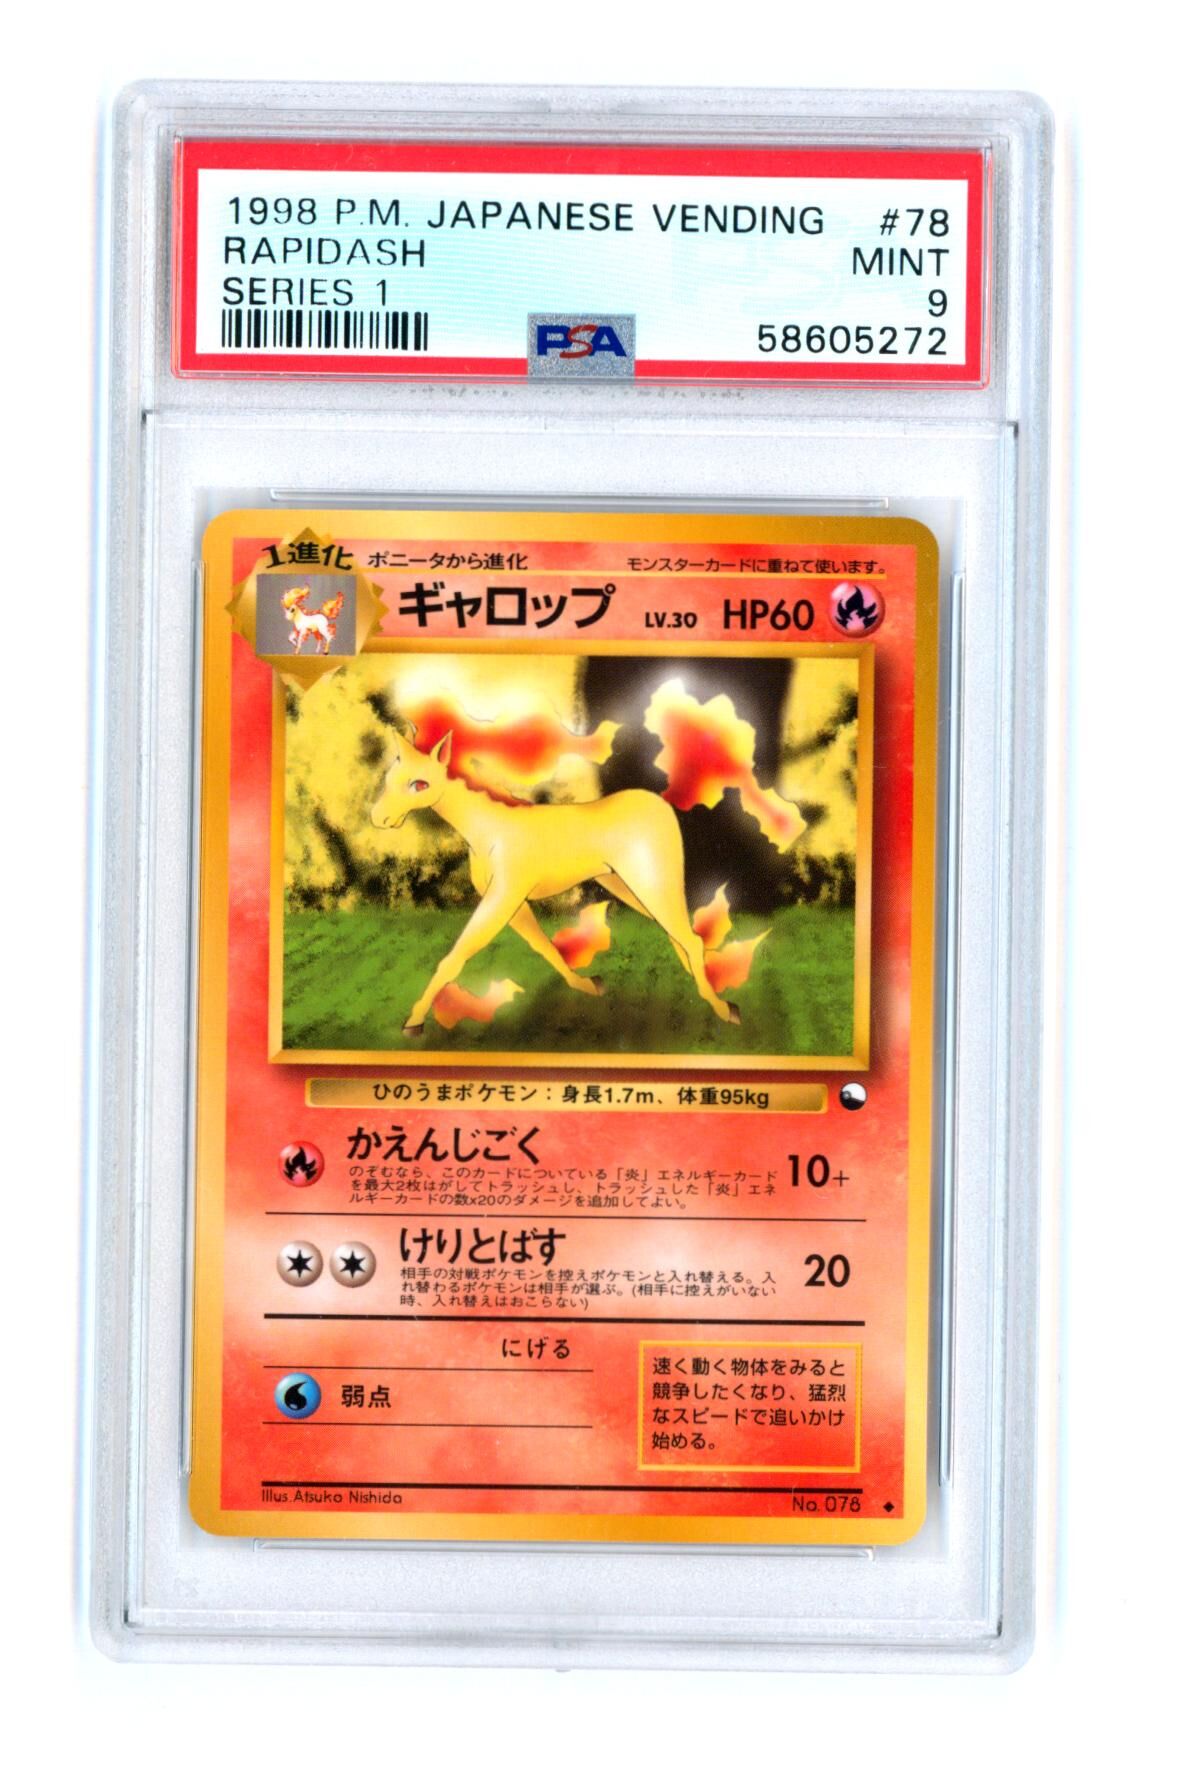 Rapidash #78 - Series 1 - Japanese Vending - PSA 9 MINT - Pokémon